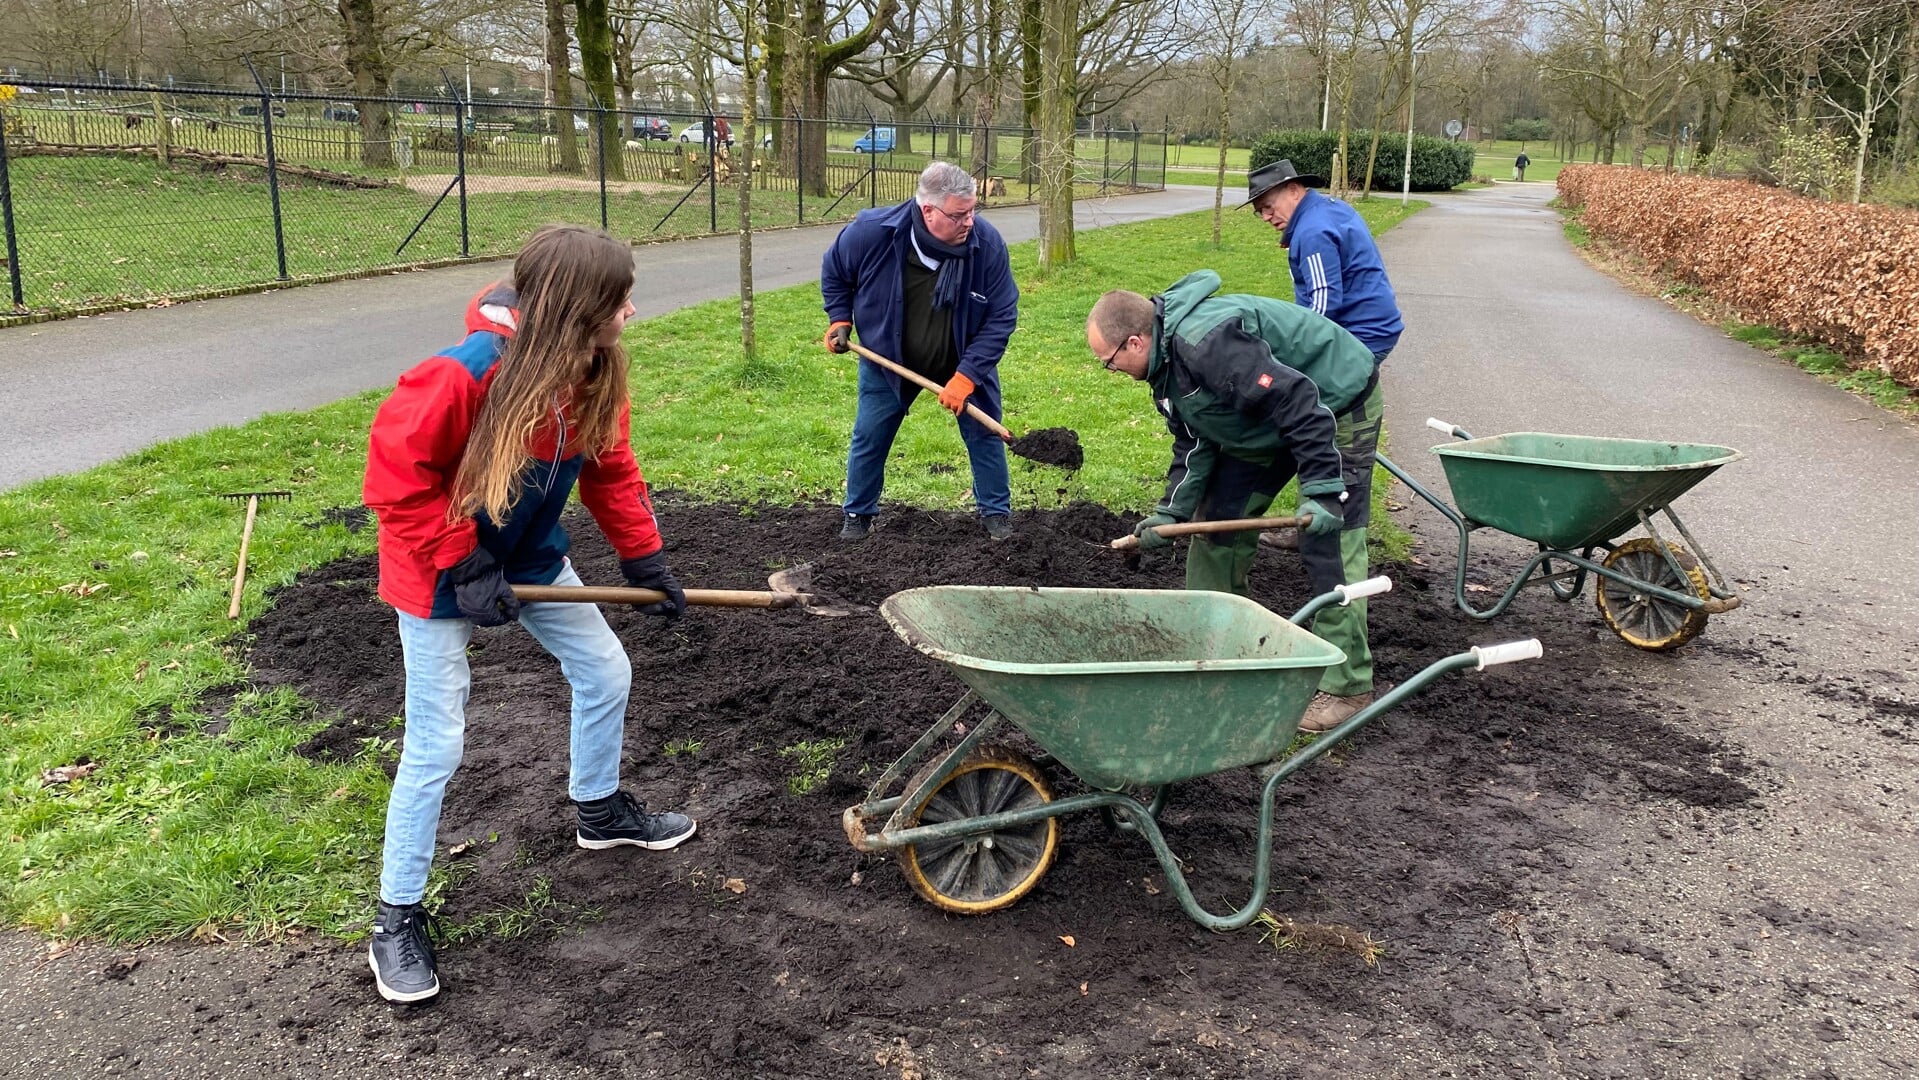 Burgemeester Bruls aan de slag met compost in Educatieve Natuurtuin Goffert tijdens NL Doet.